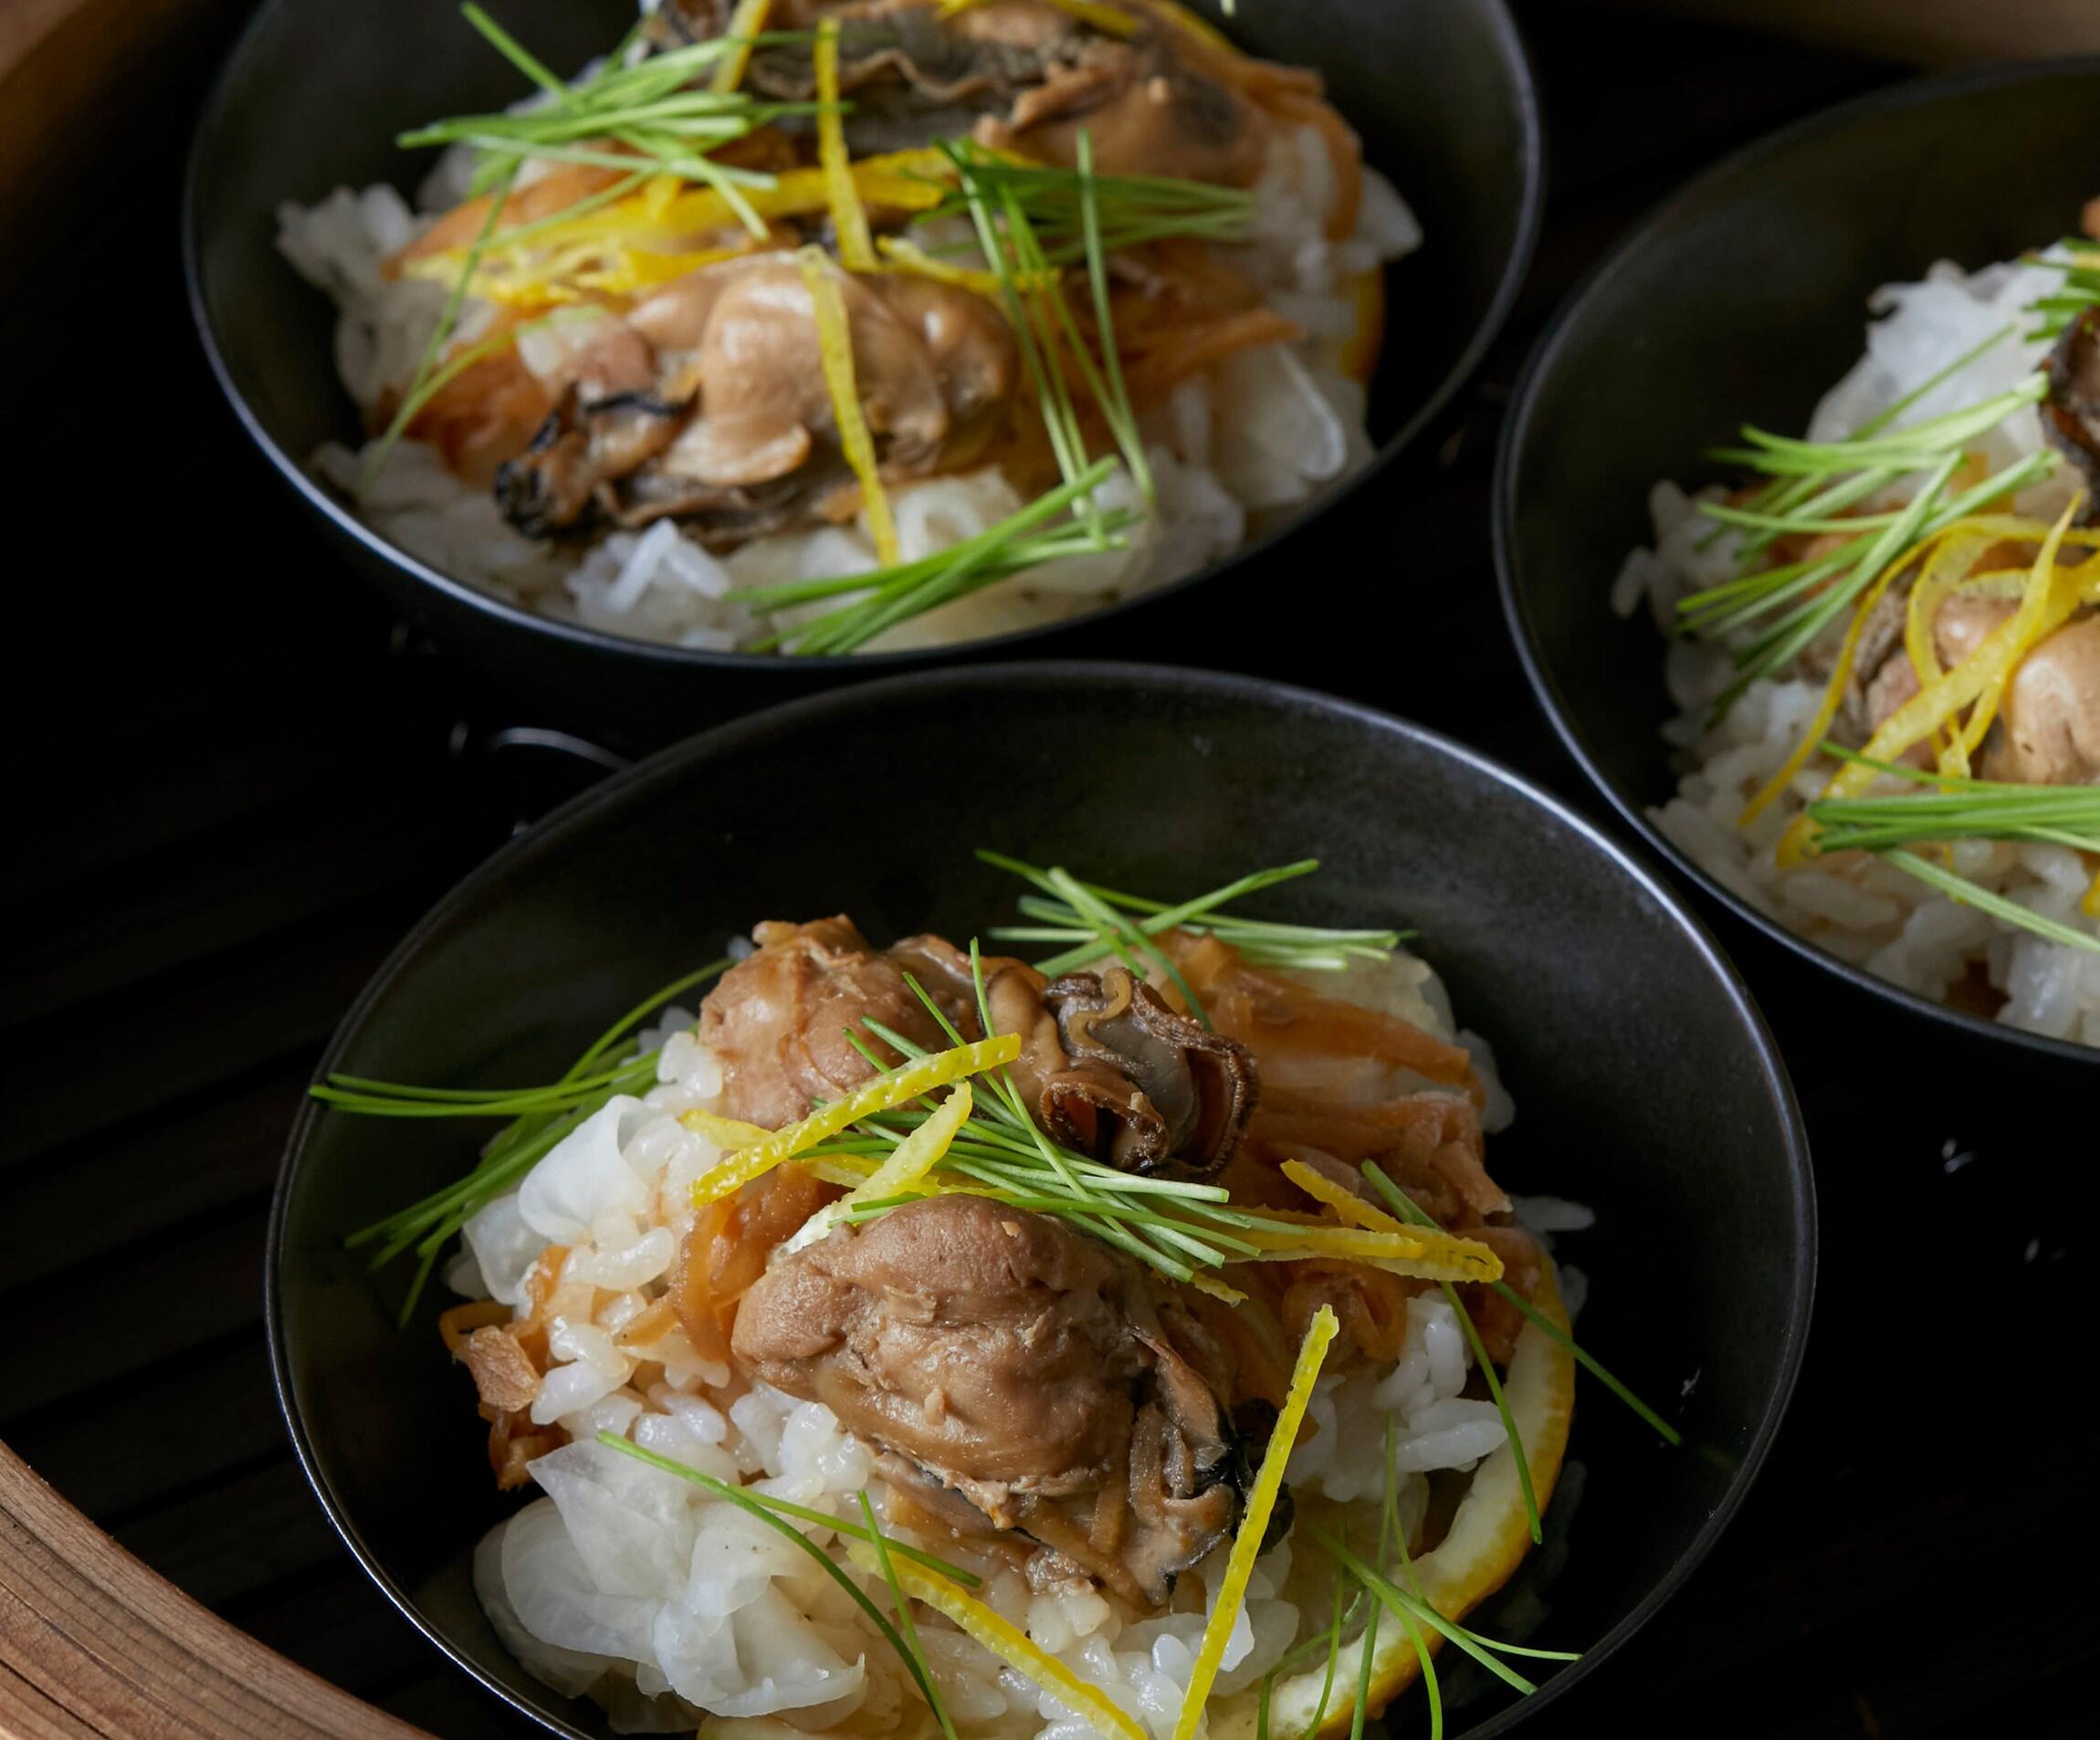 濃厚な旨味と軽やかな香りが楽しめる 牡蠣と大根の柚香蒸し寿司 冬の新定番料理 今日 なにつくる 公式 Dancyu ダンチュウ